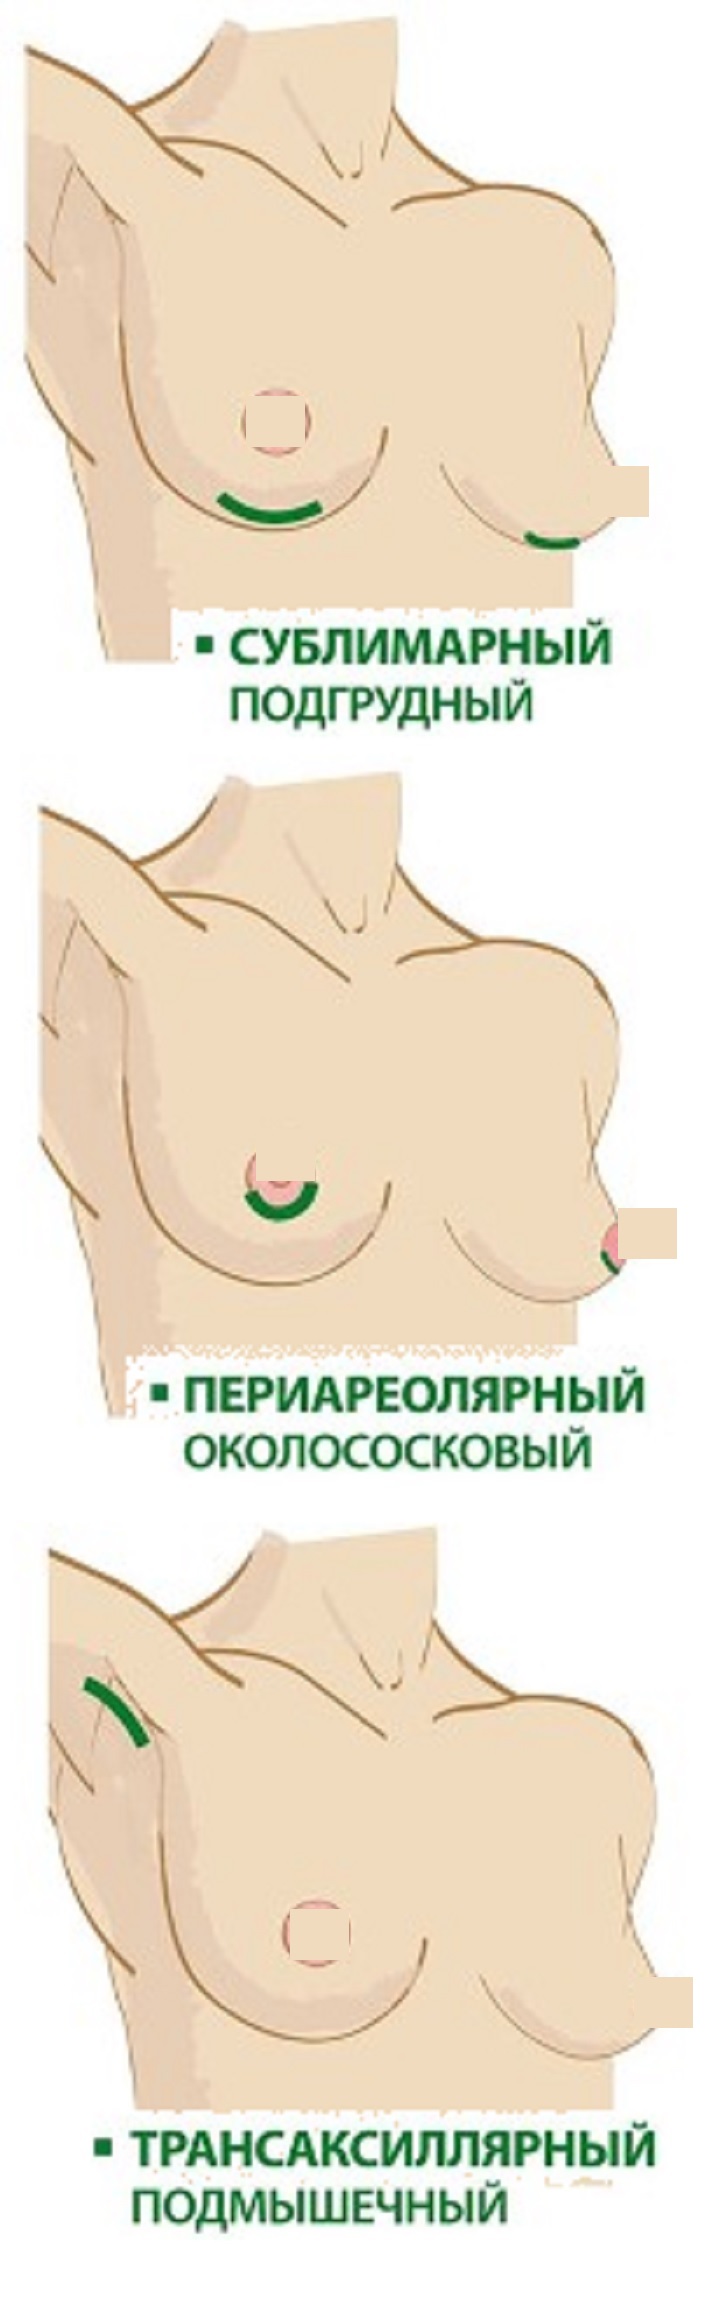 Введение имплантов в грудь